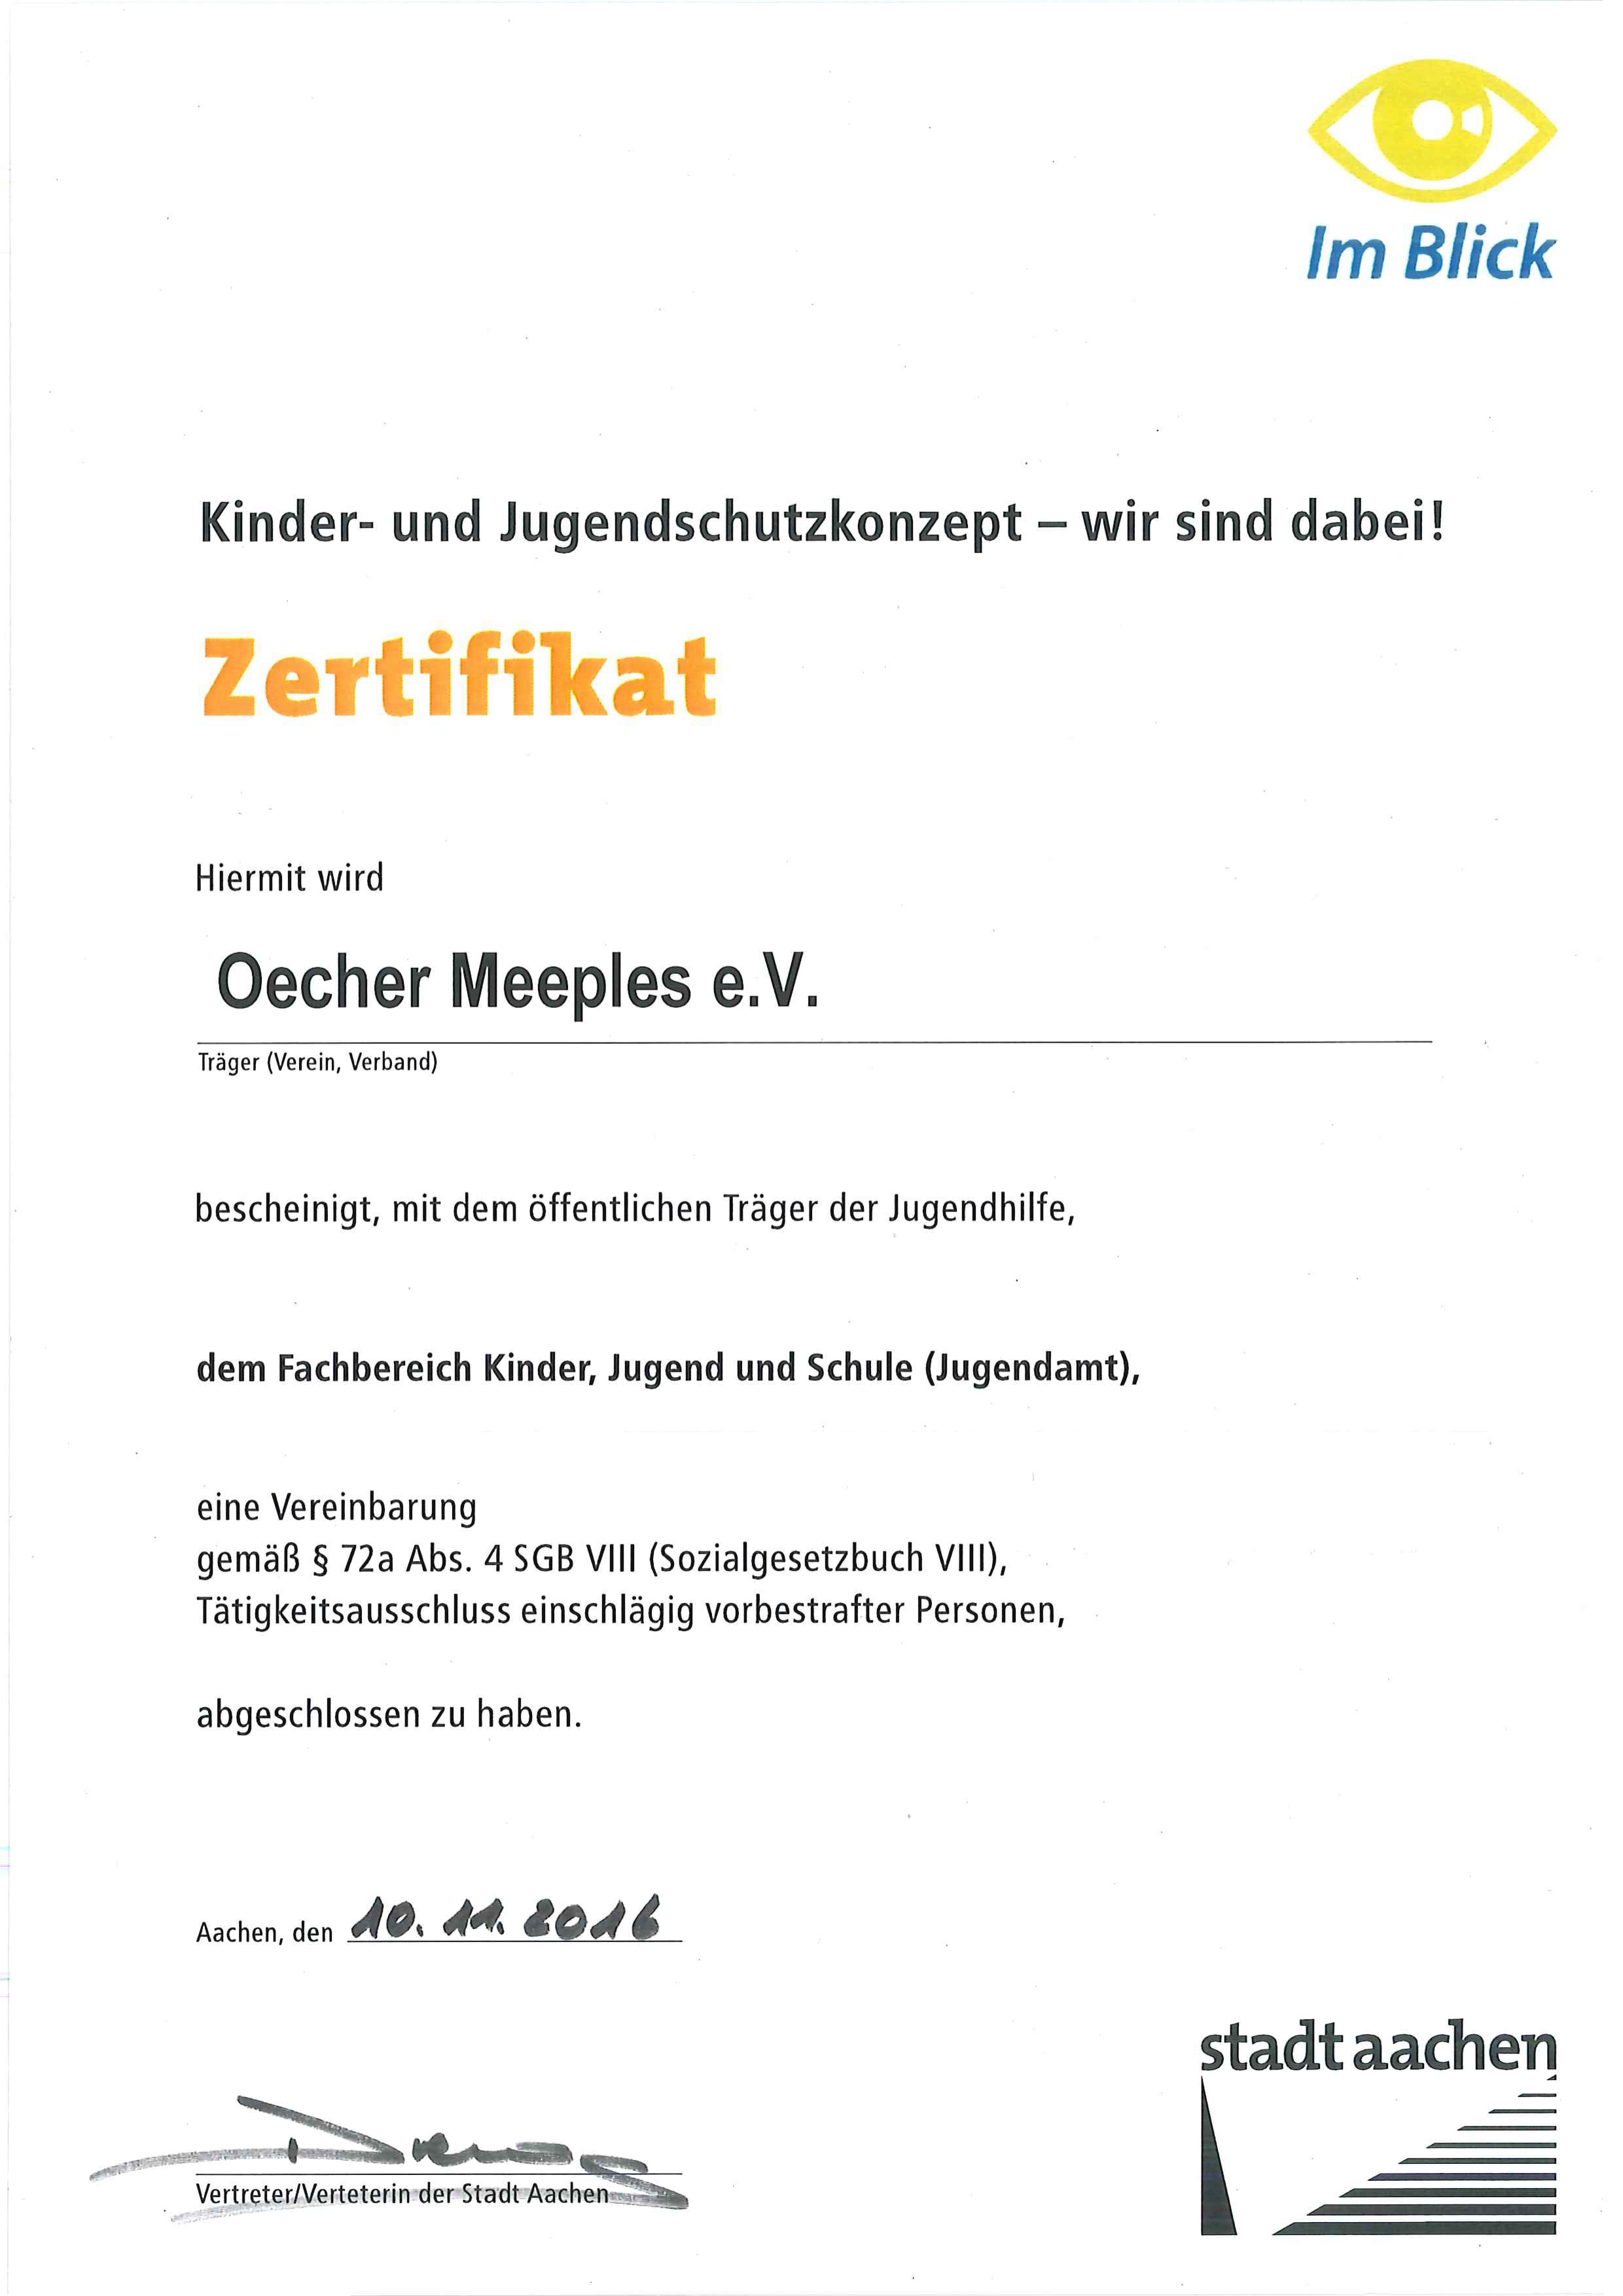 Zertifikat der Stadt Aachen